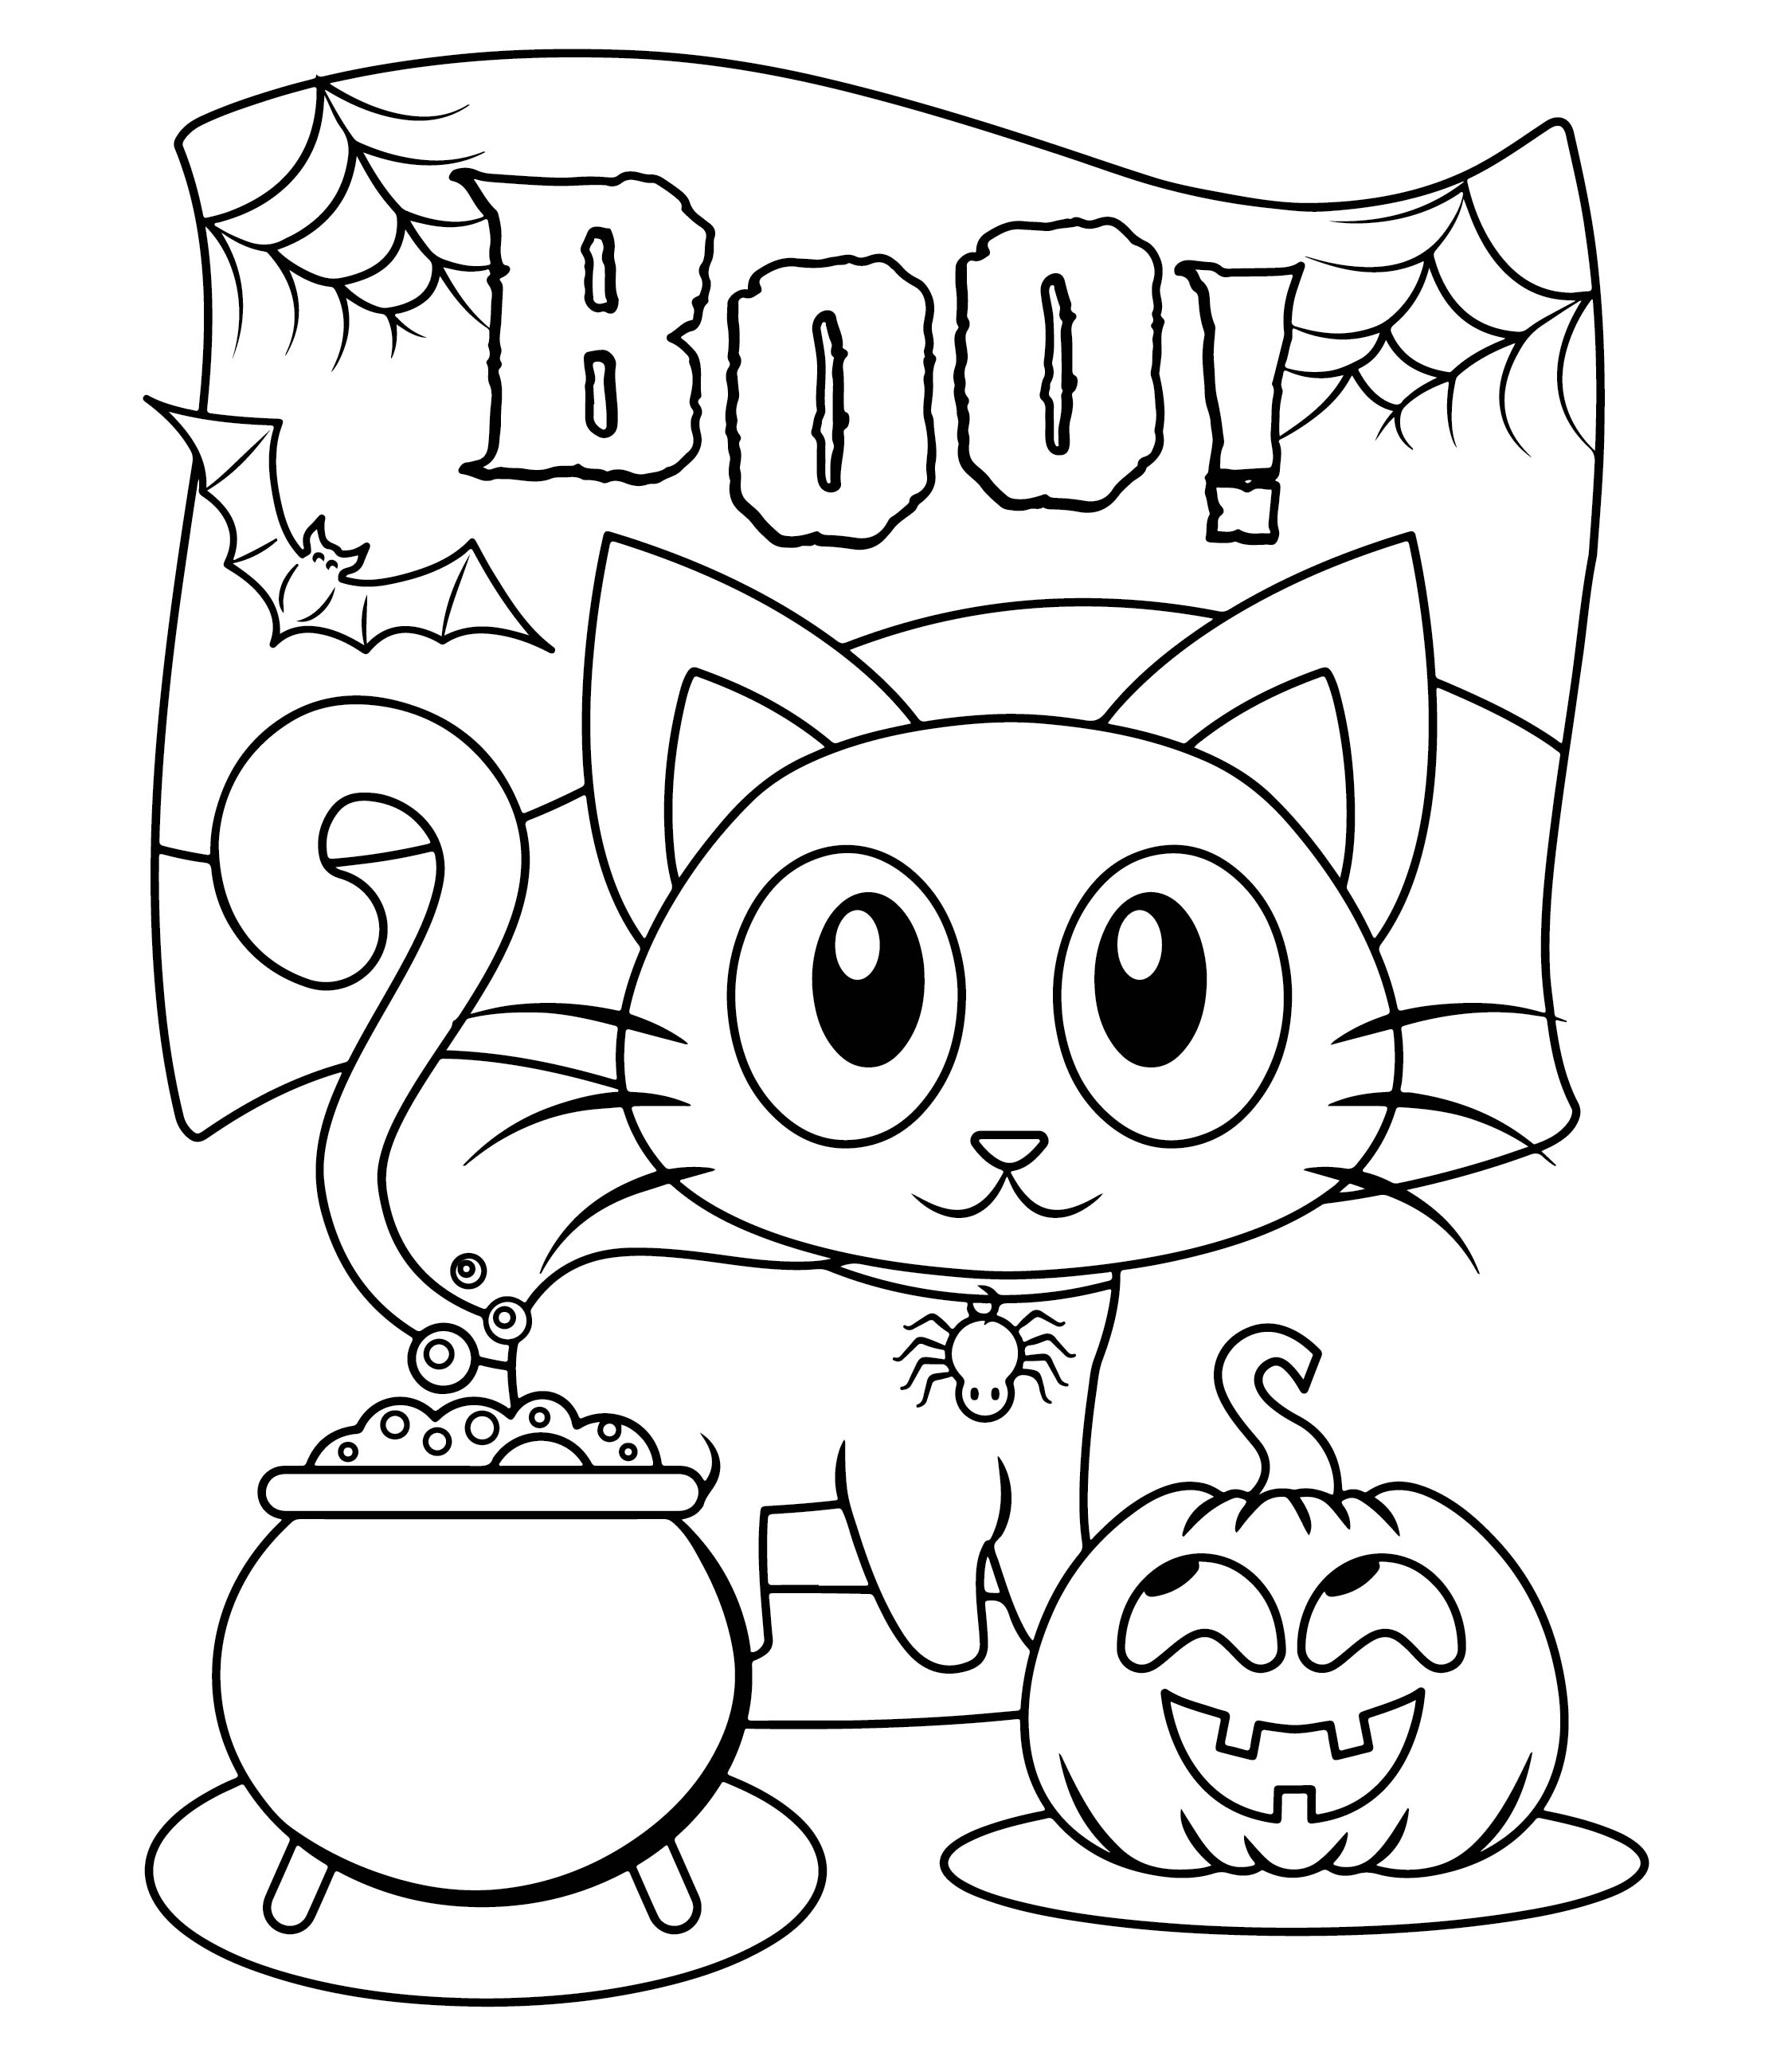 6 Best Images of Kindergarten Halloween Craft Printables - Free